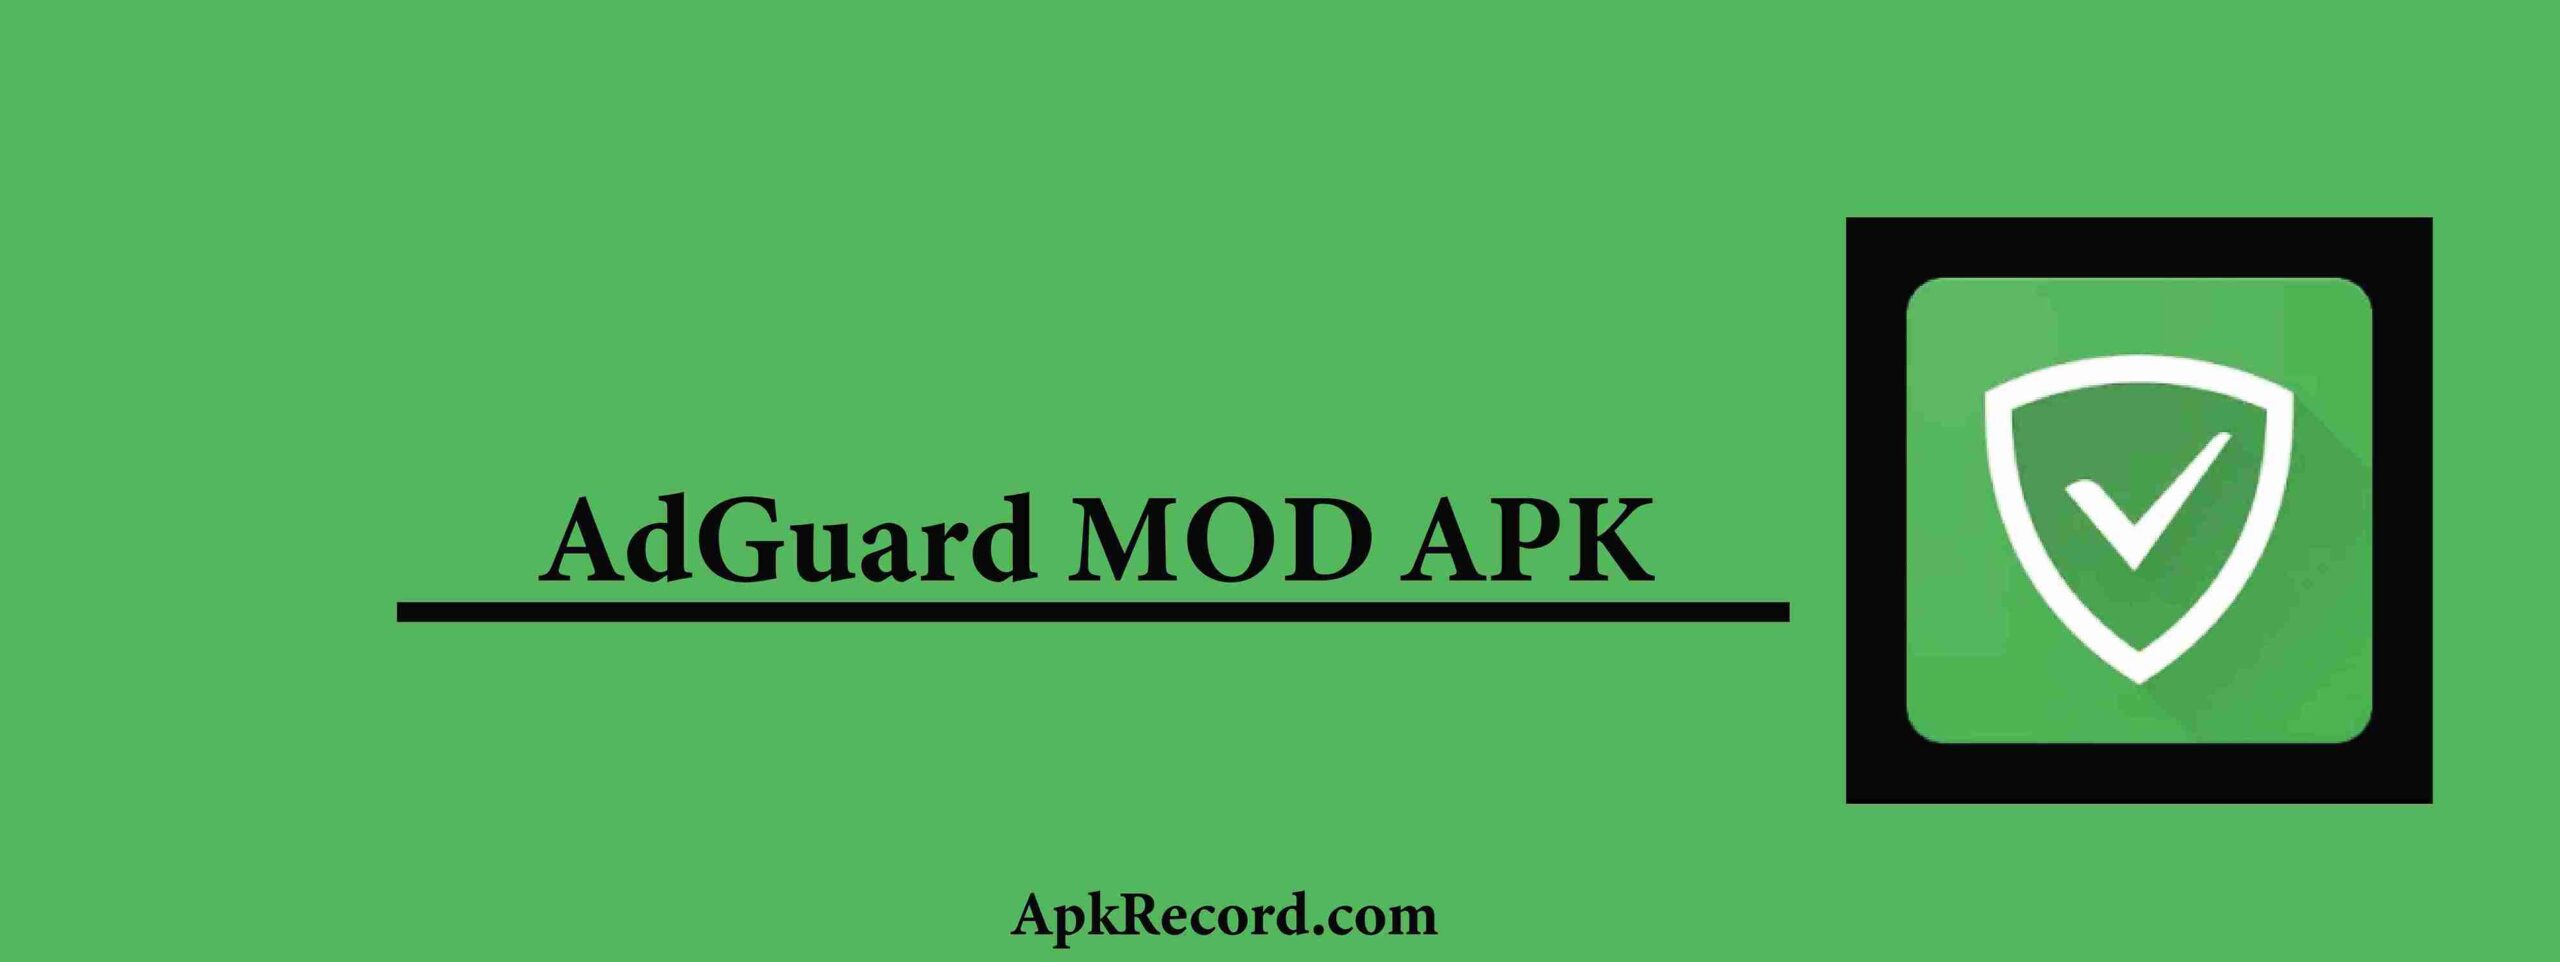 AdGuard V4.4.1 MOD APK